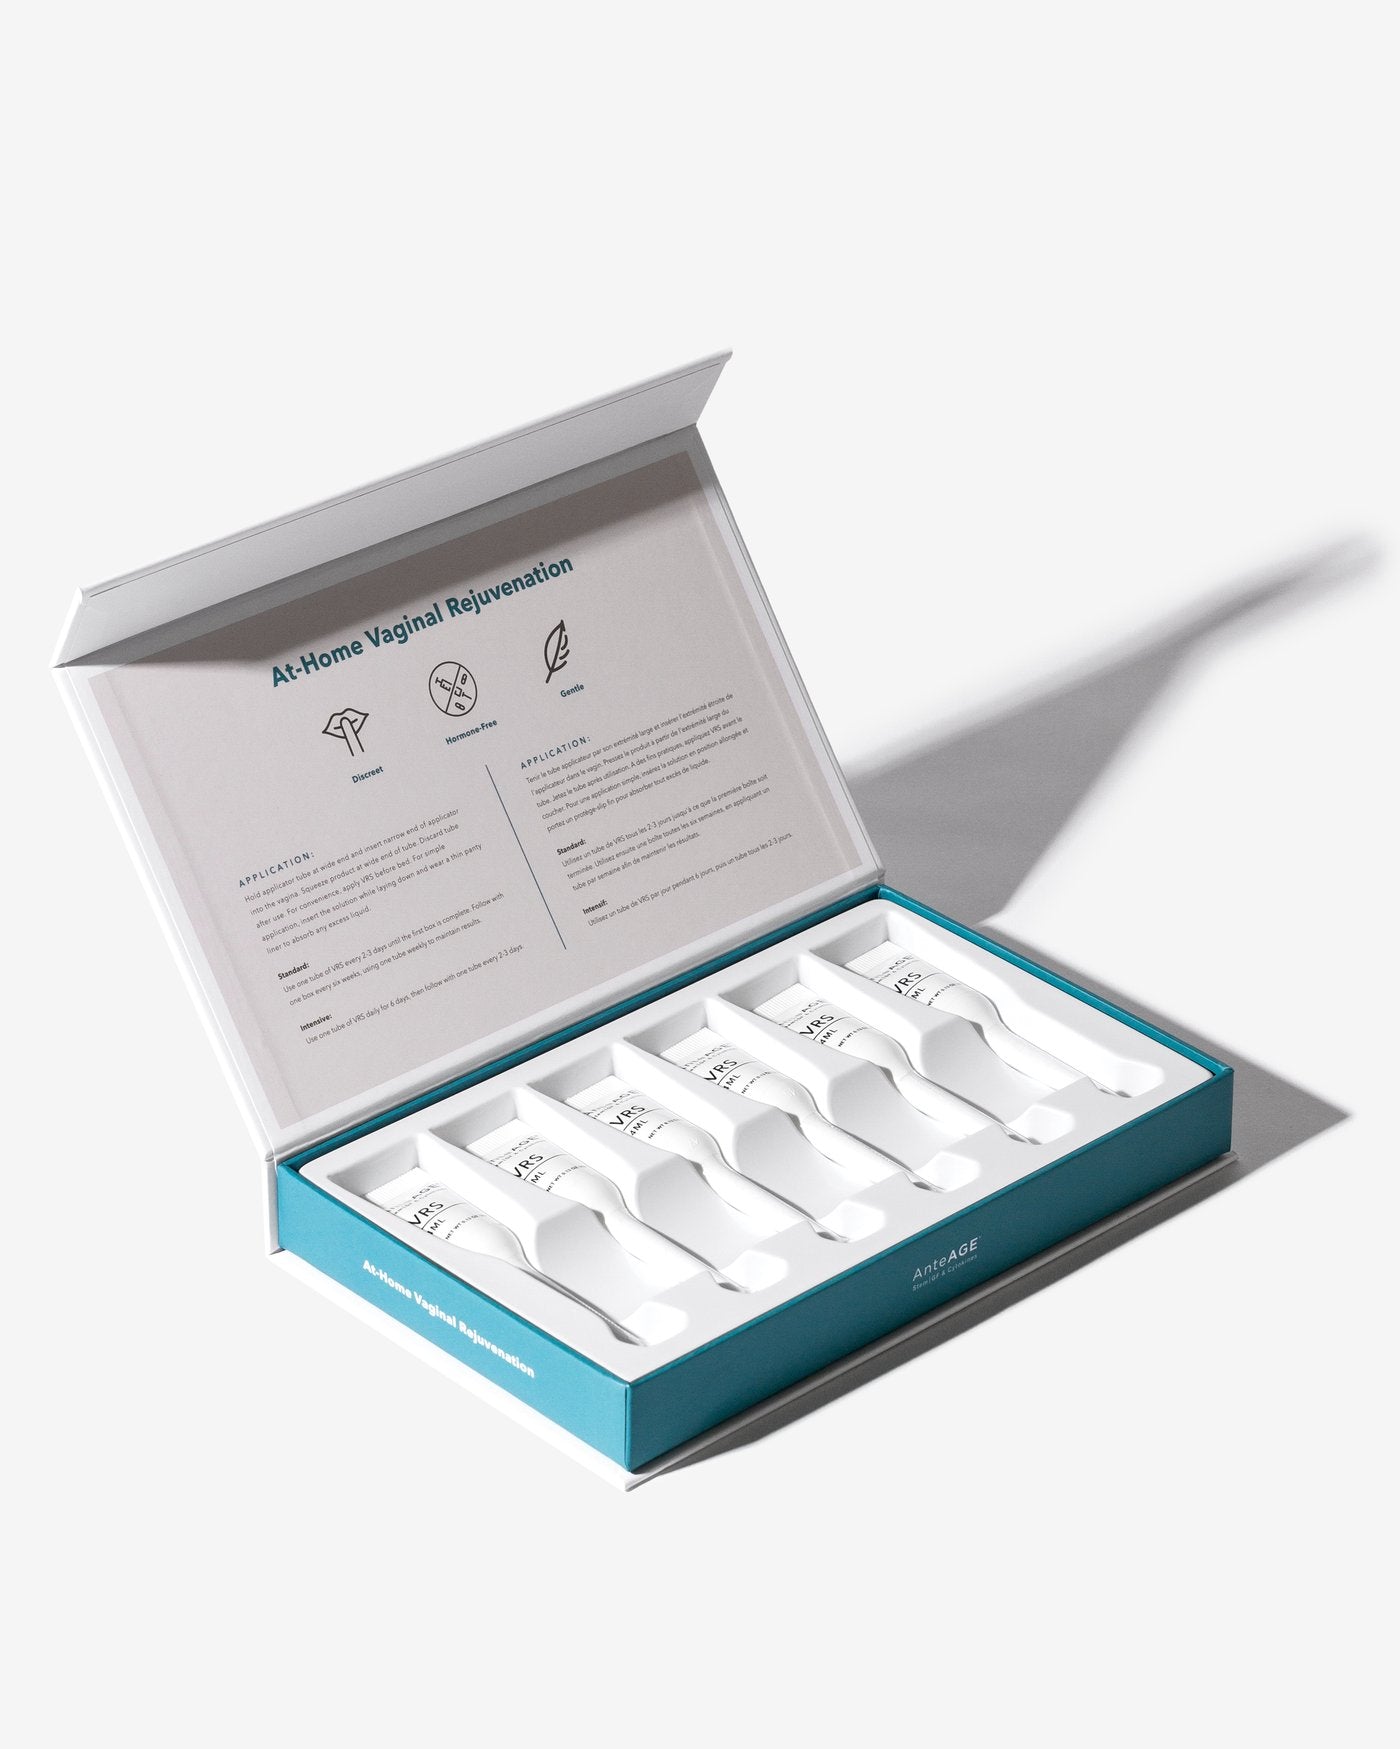 AnteAGE® VRS Vaginal Rejuvenation System - Click to Buy!